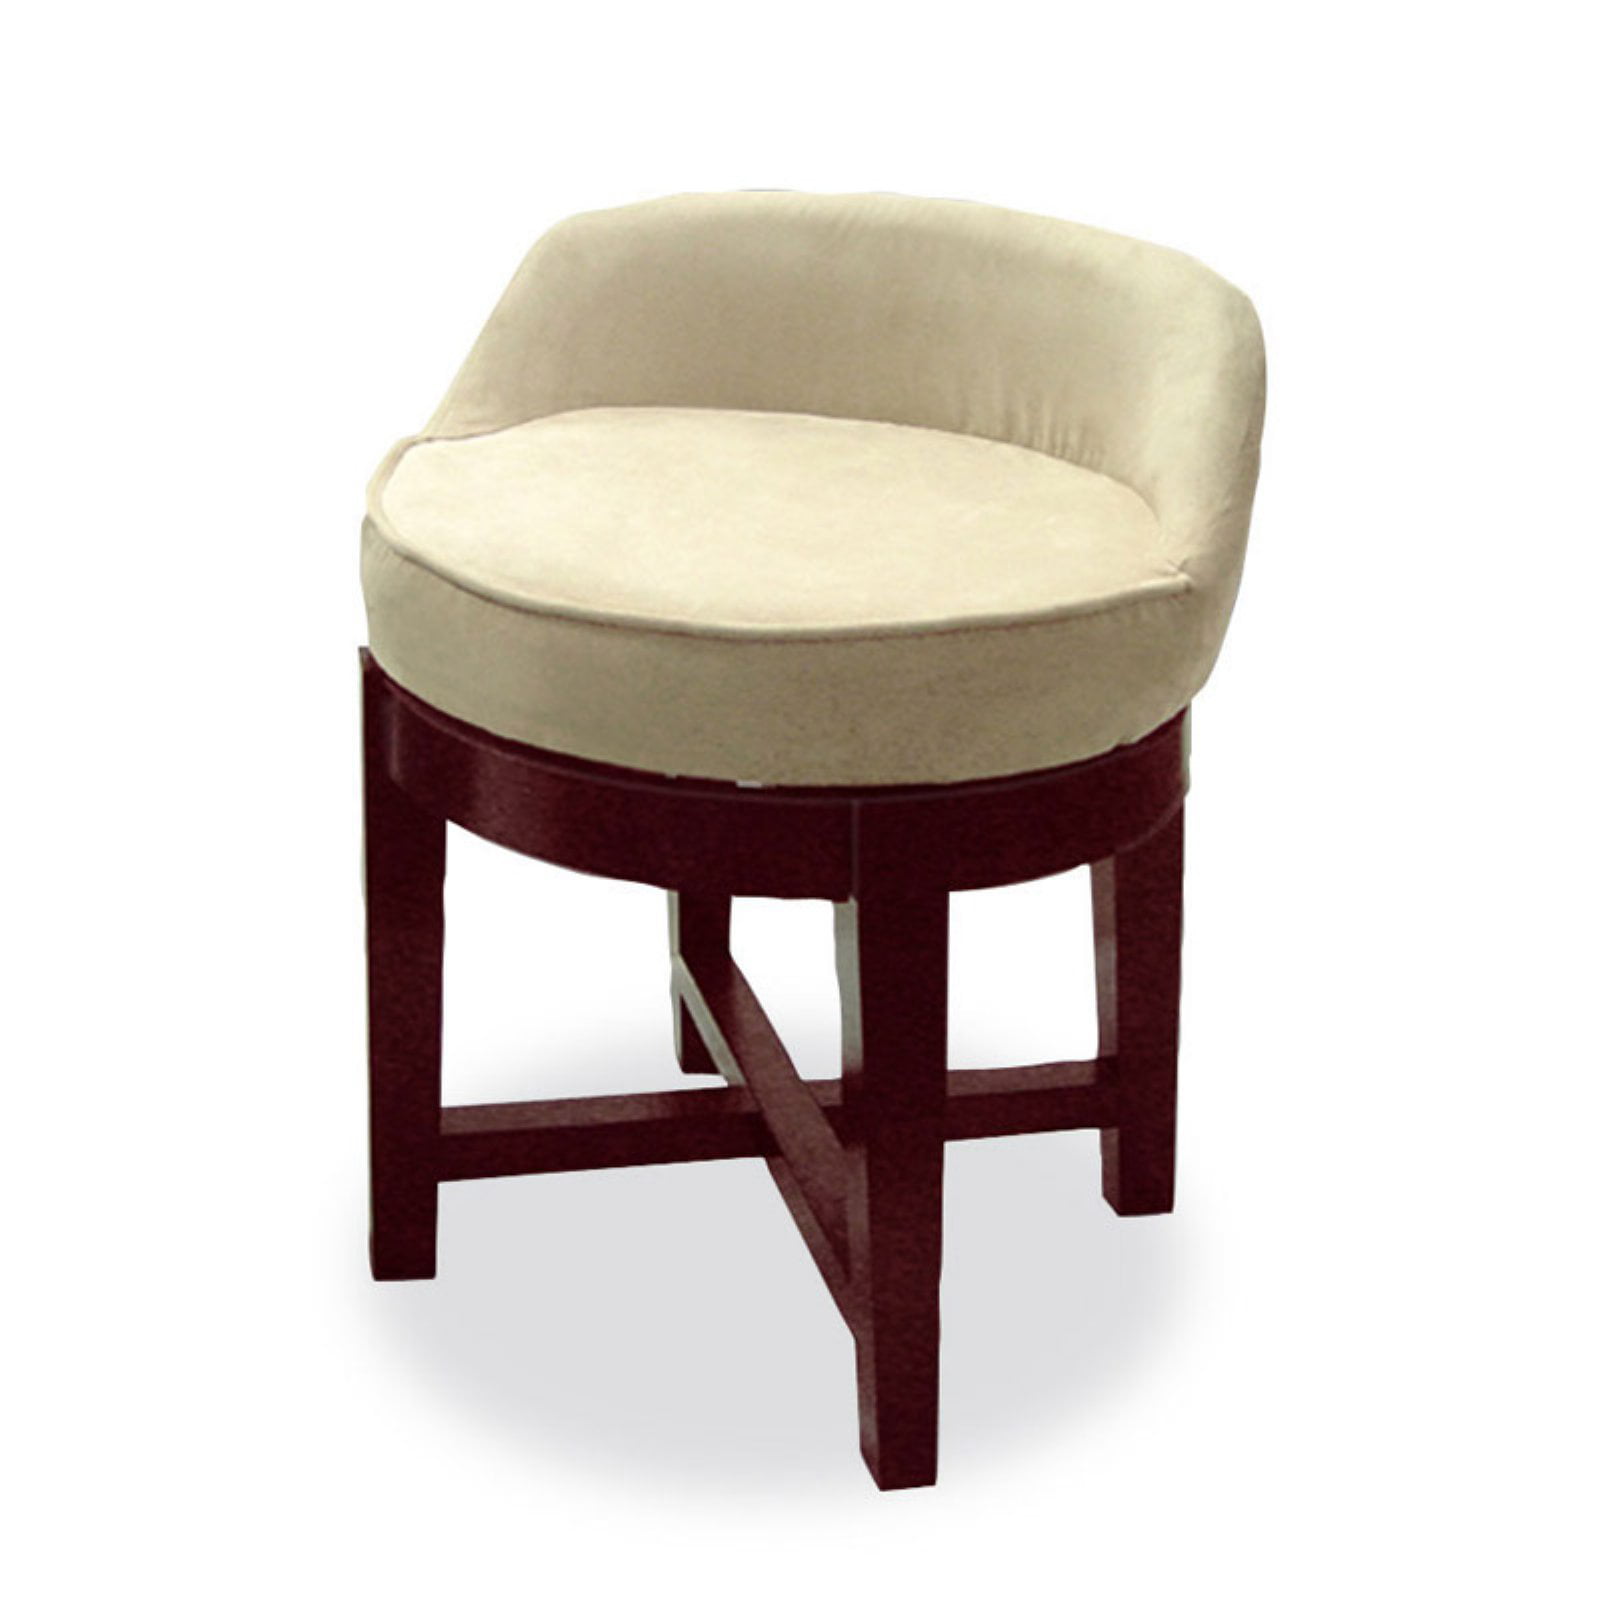 Swivel Upholstered Vanity Chair, Vanity Chair Bathroom